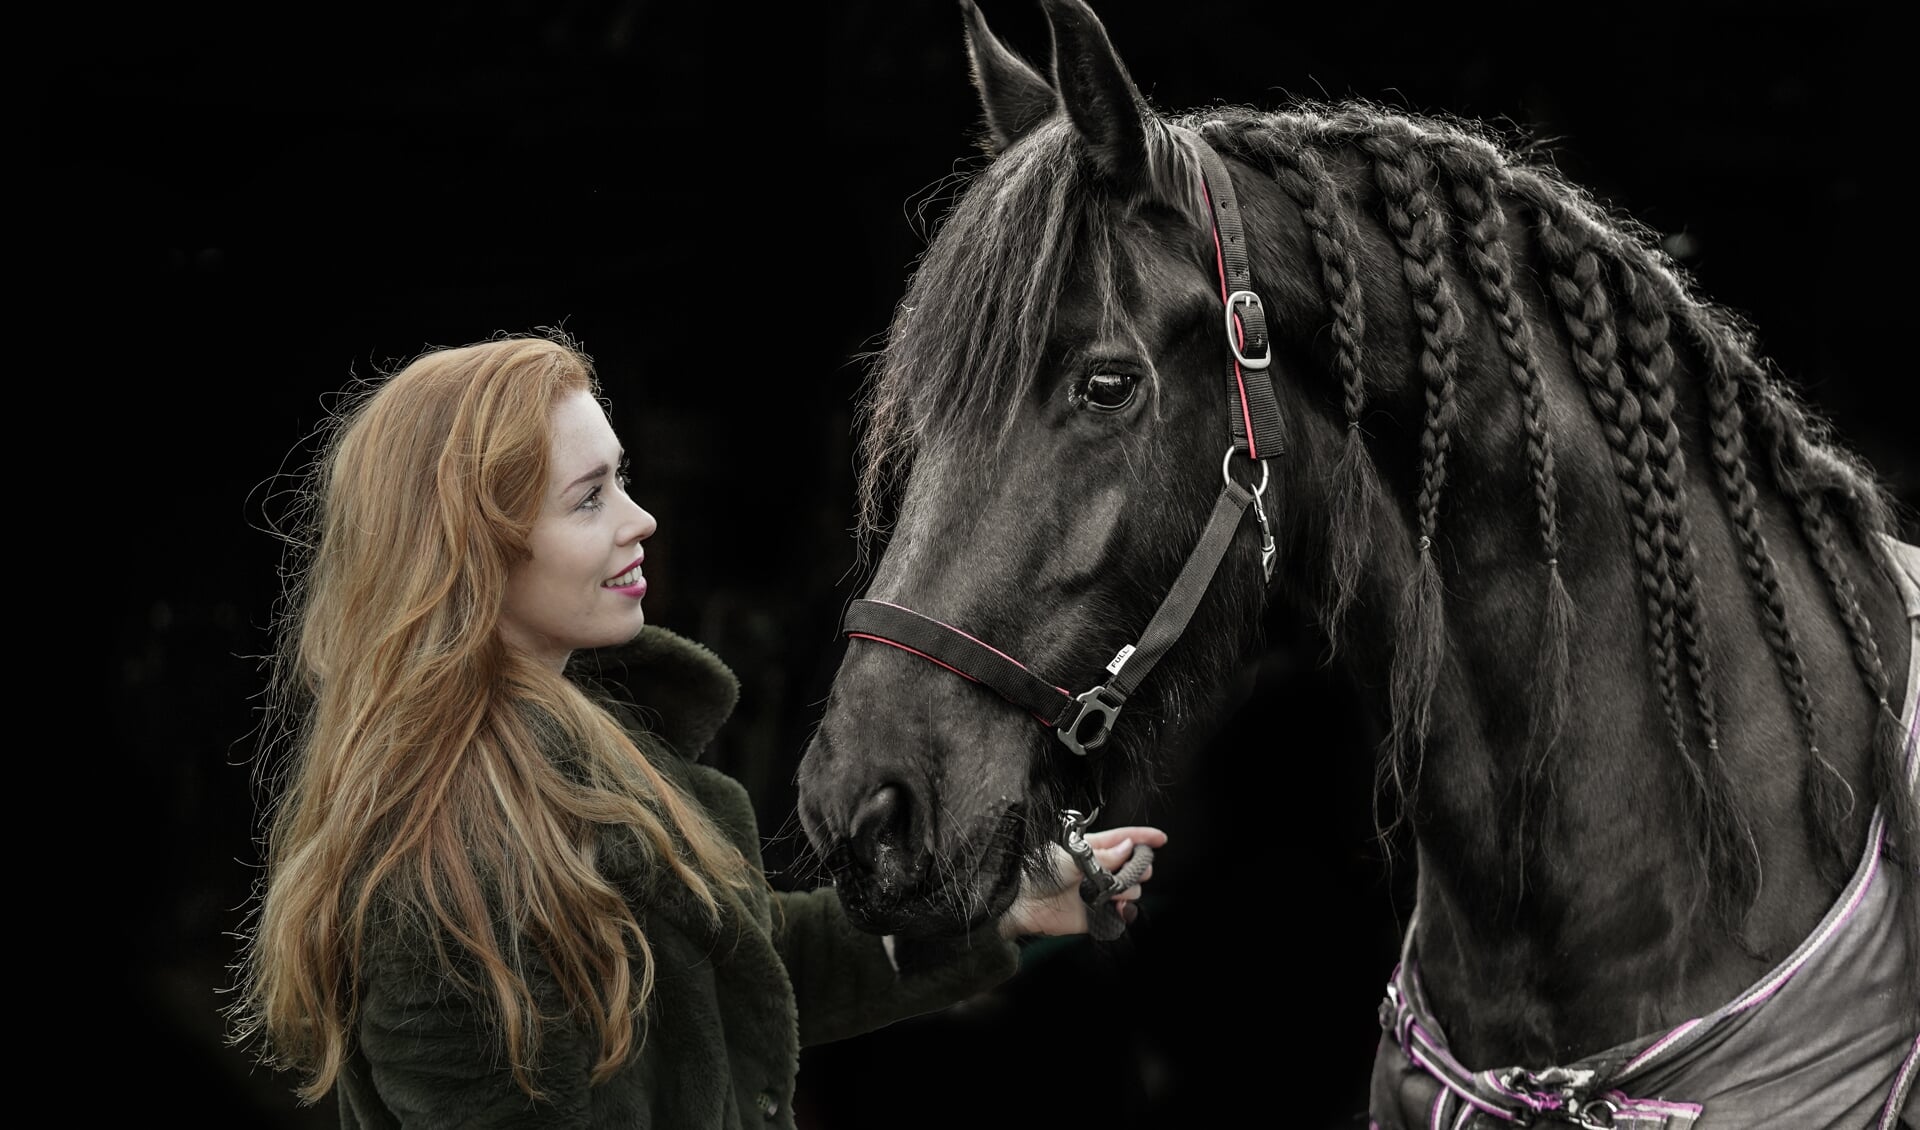 Antoinette de Jong met haar andere liefde: paarden. ,,Ik heb inmiddels samen met mijn opa een veulen gefokt. Dat vind ik echt wel iets voor de toekomst.’’ (Foto Timsimaging)